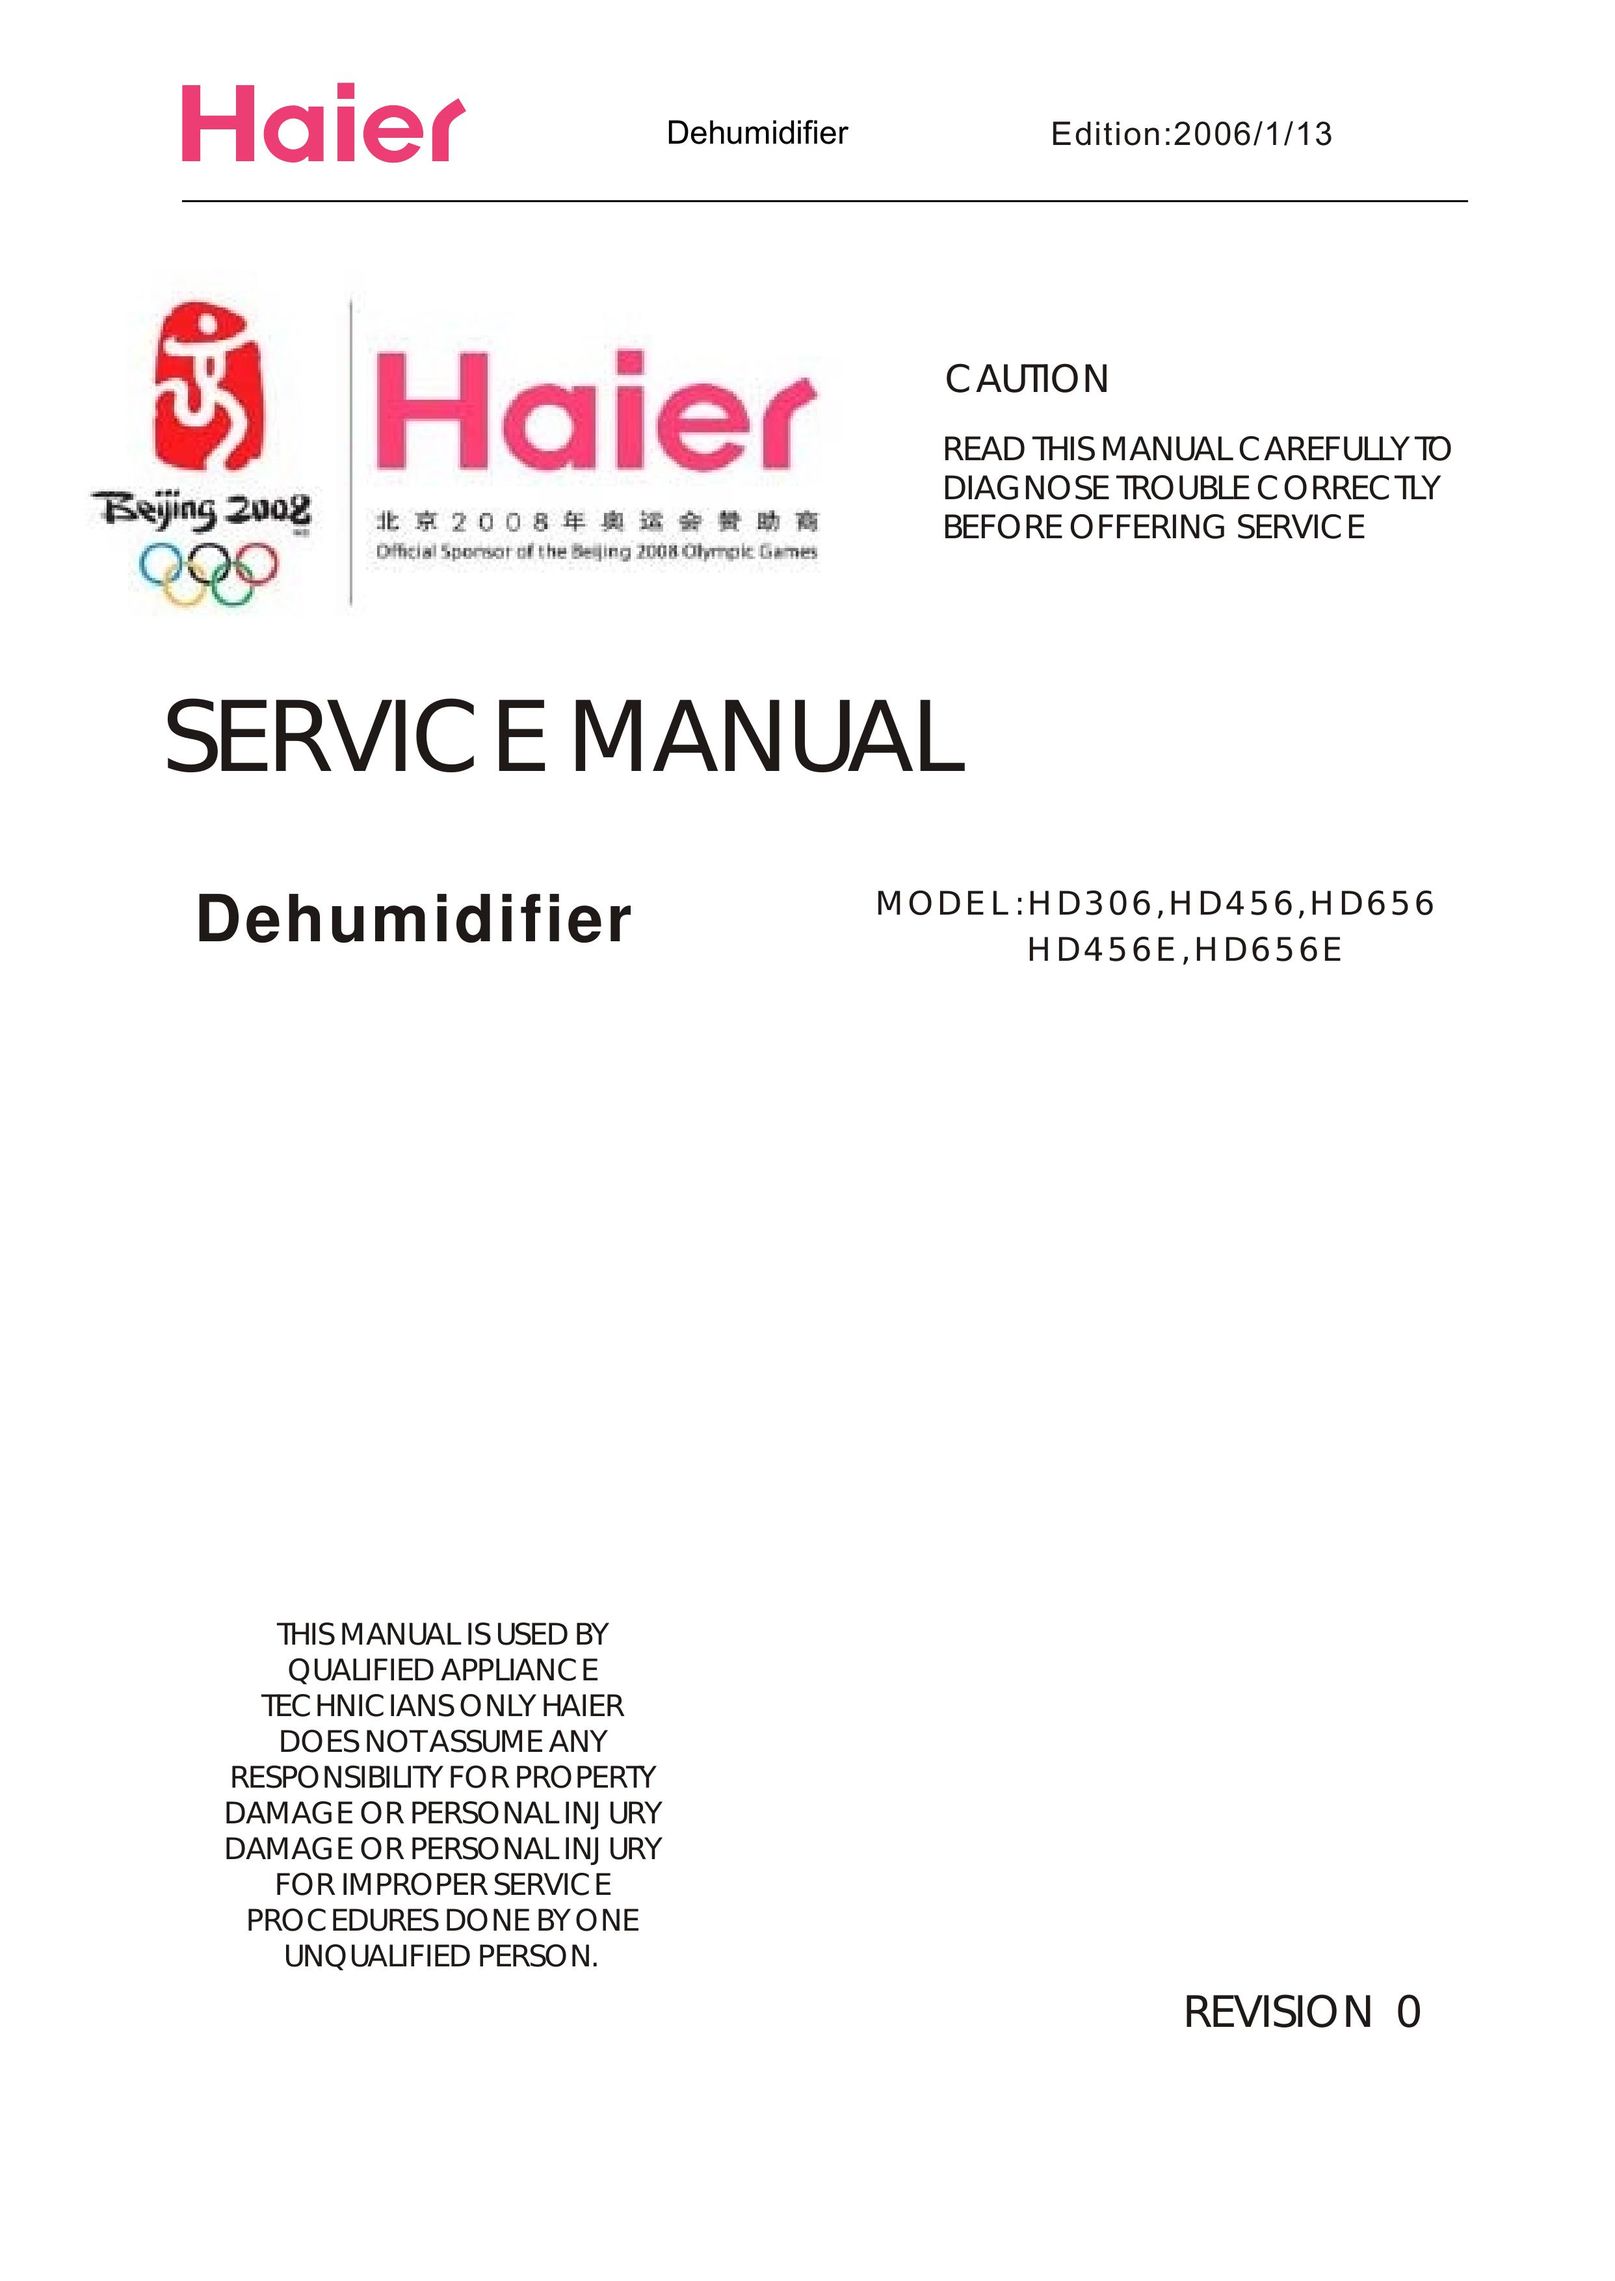 Haier HD306 Dehumidifier User Manual